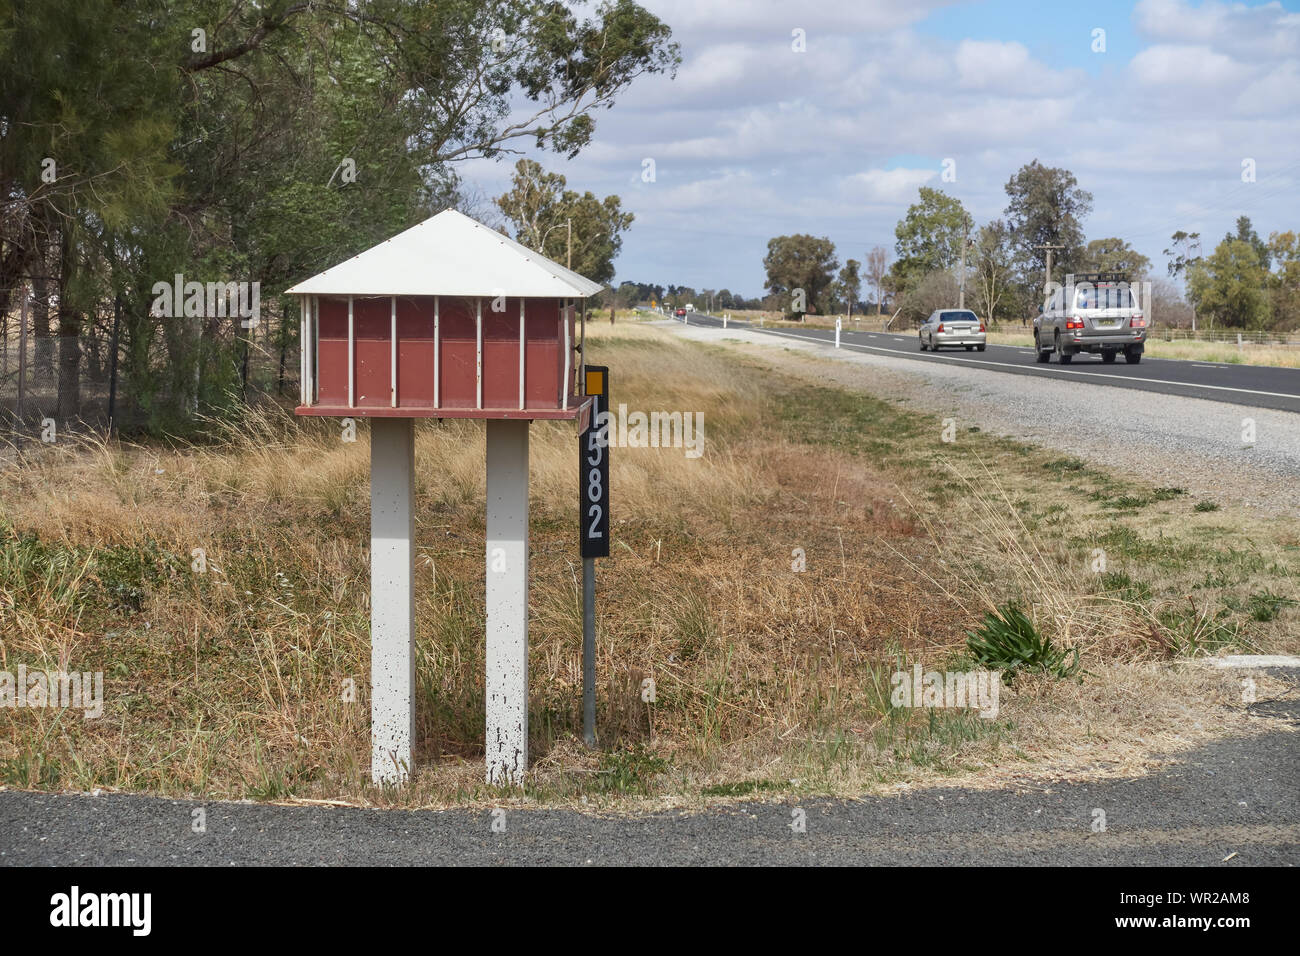 Une boîte aux lettres en bordure de l'Australie dans le style maison de ferme. Attunga , l'Australie. Banque D'Images